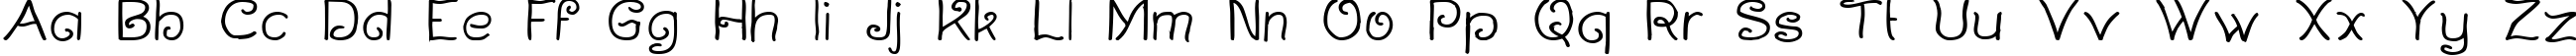 Пример написания английского алфавита шрифтом Curlmudgeon